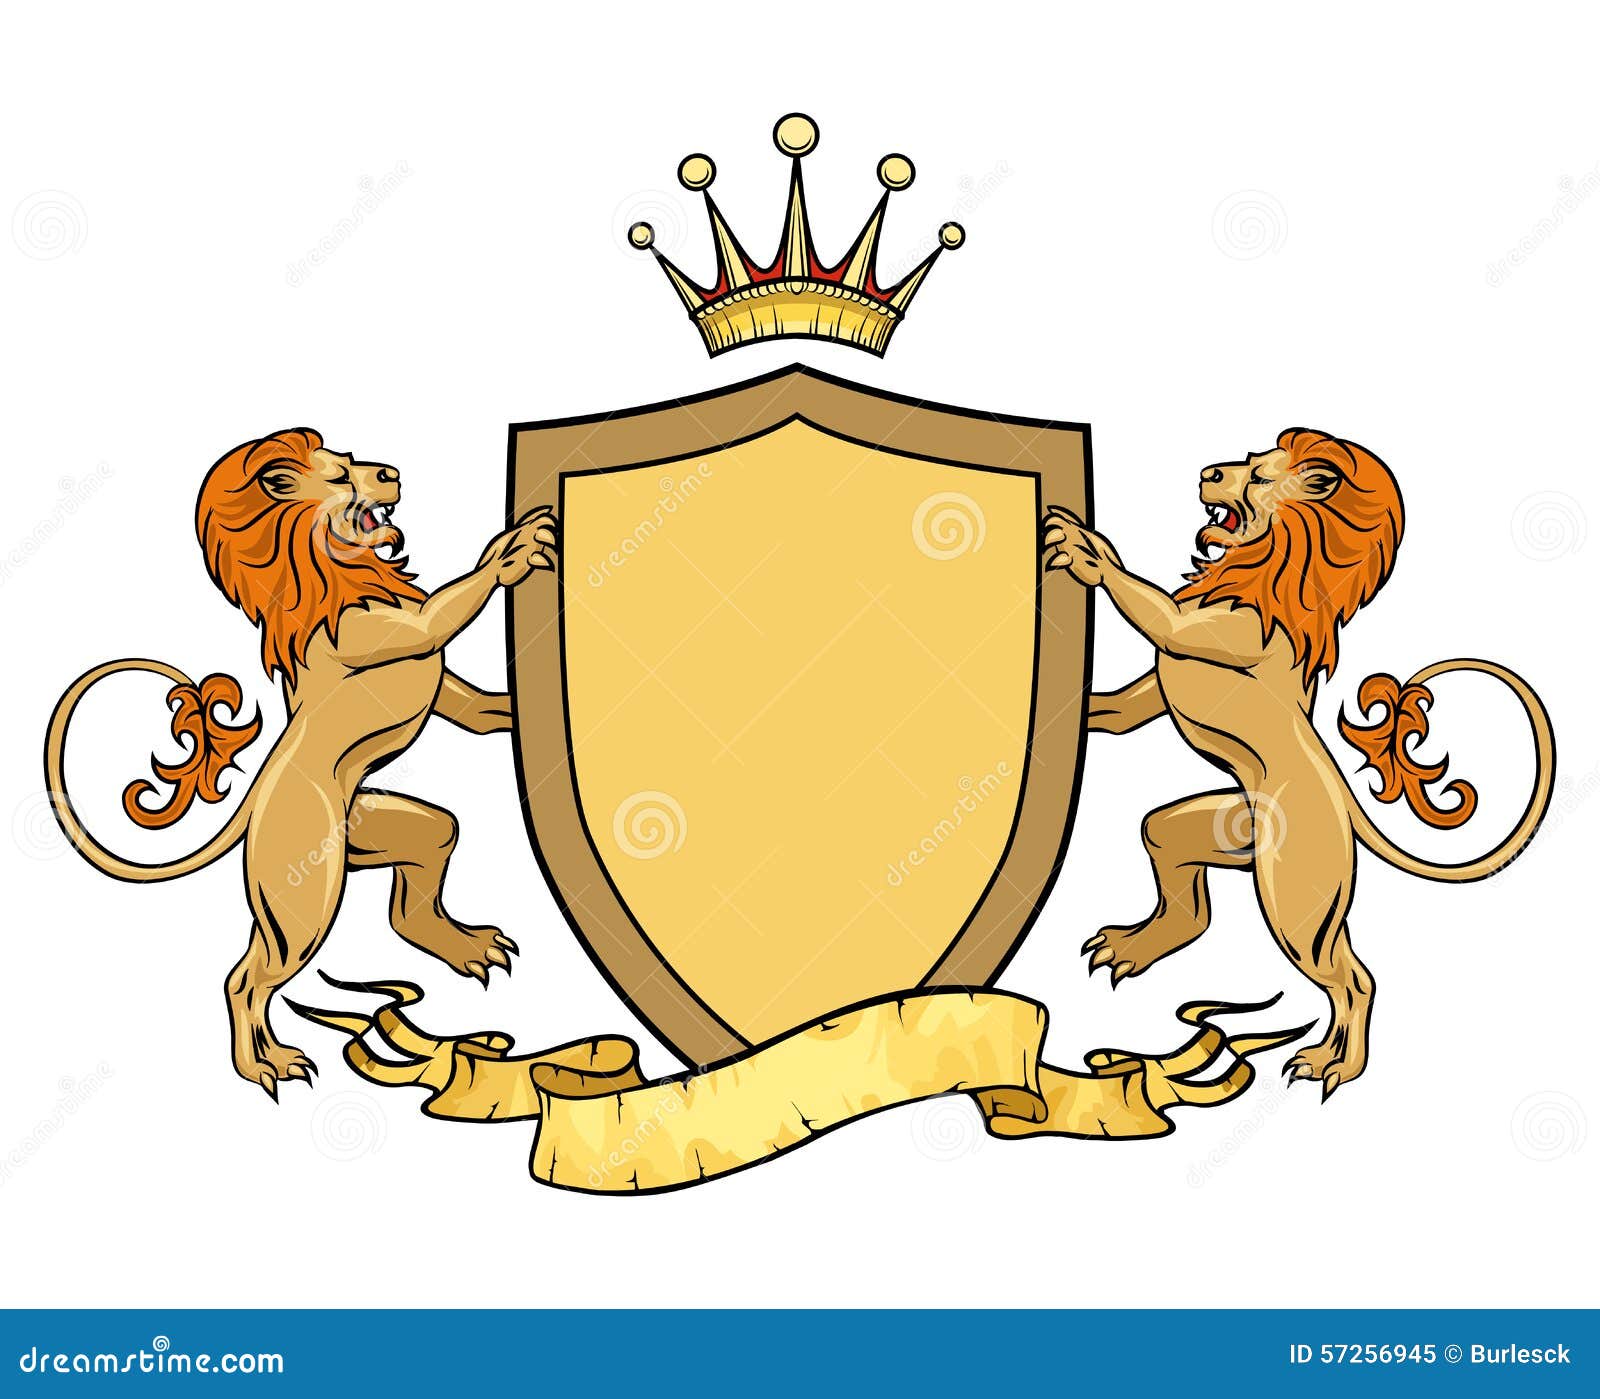 Герб где лев. Герб семьищитодержатели львы. Геральдический Лев на щите. Щит со львом. Геральдический щит со львами и короной.